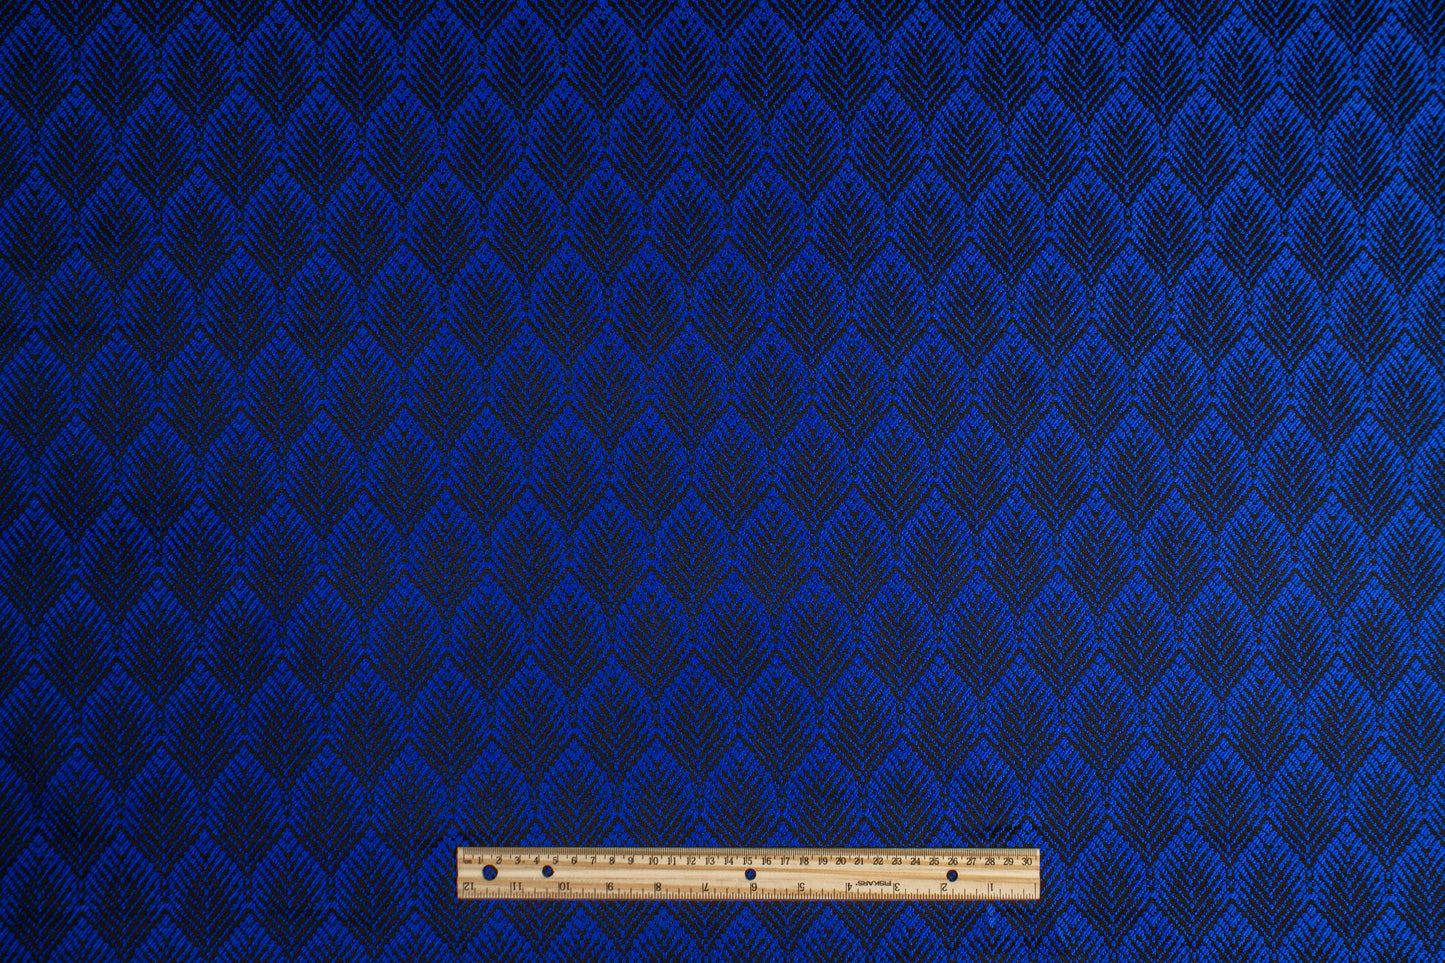 Abstract Brocade - Royal Blue and Black